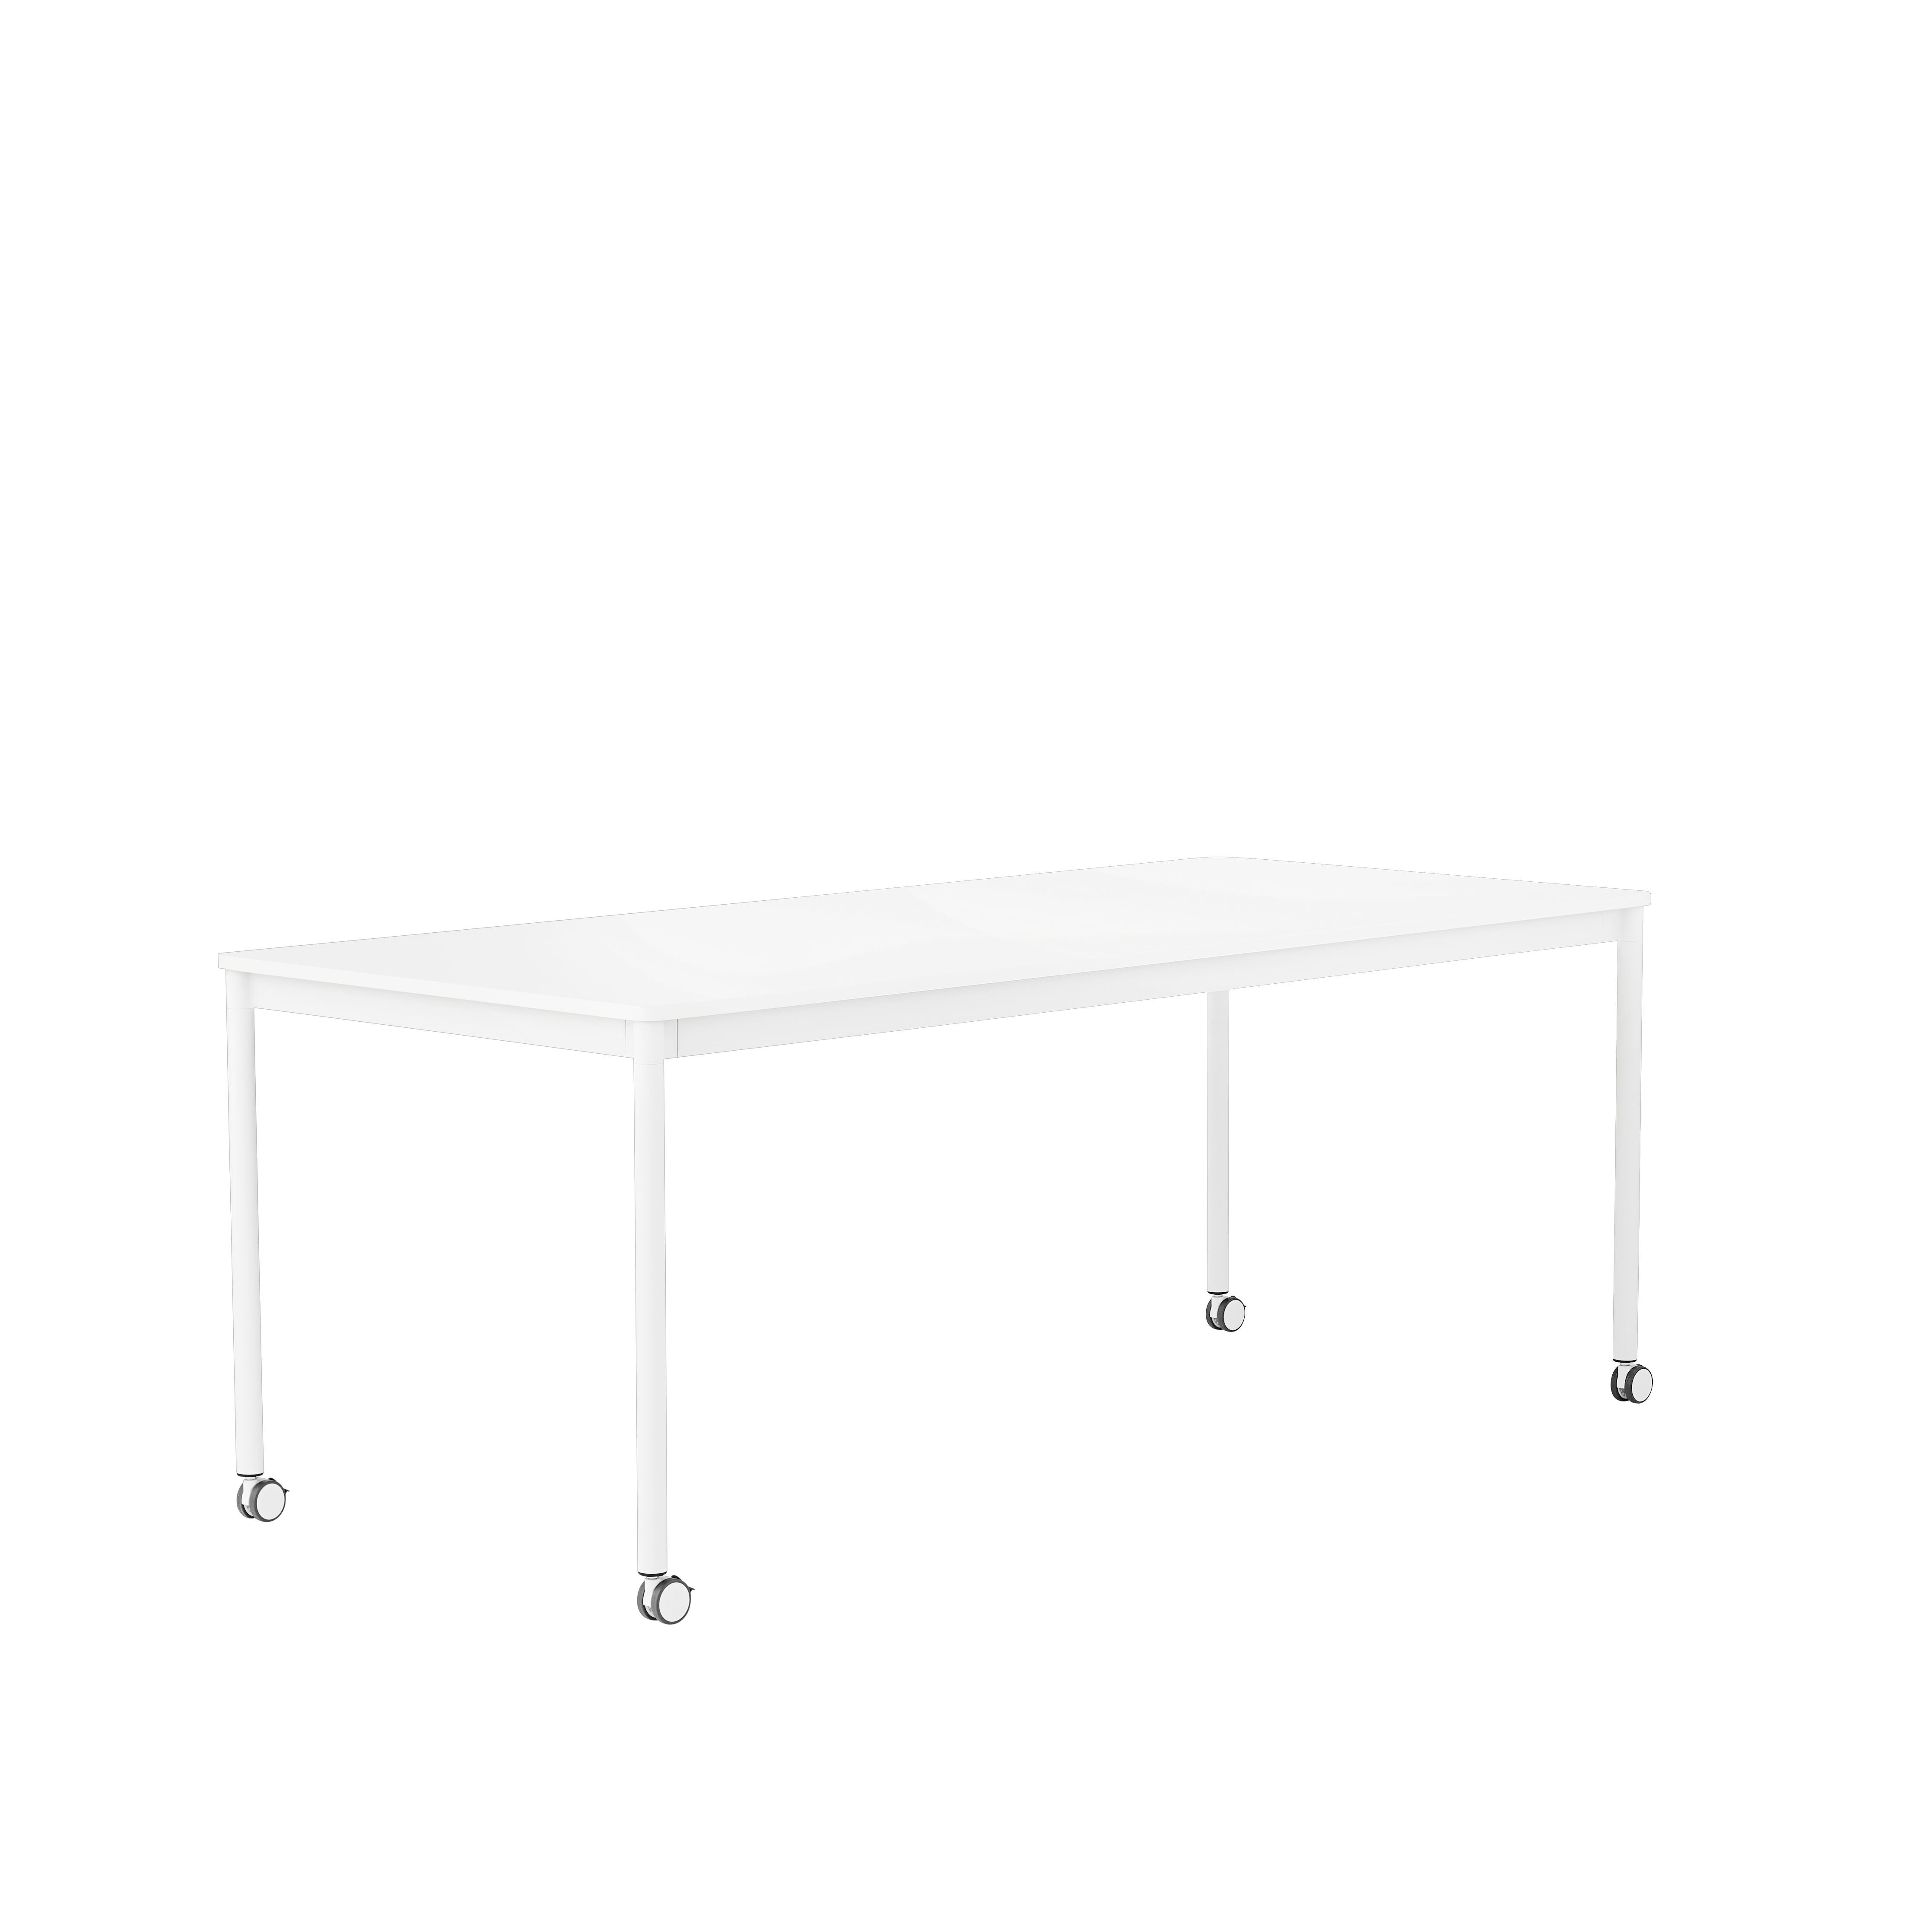 Muuto Base High Table M. Rollen 190x85x105 cm, weißer Laminat/weißer Rahmen